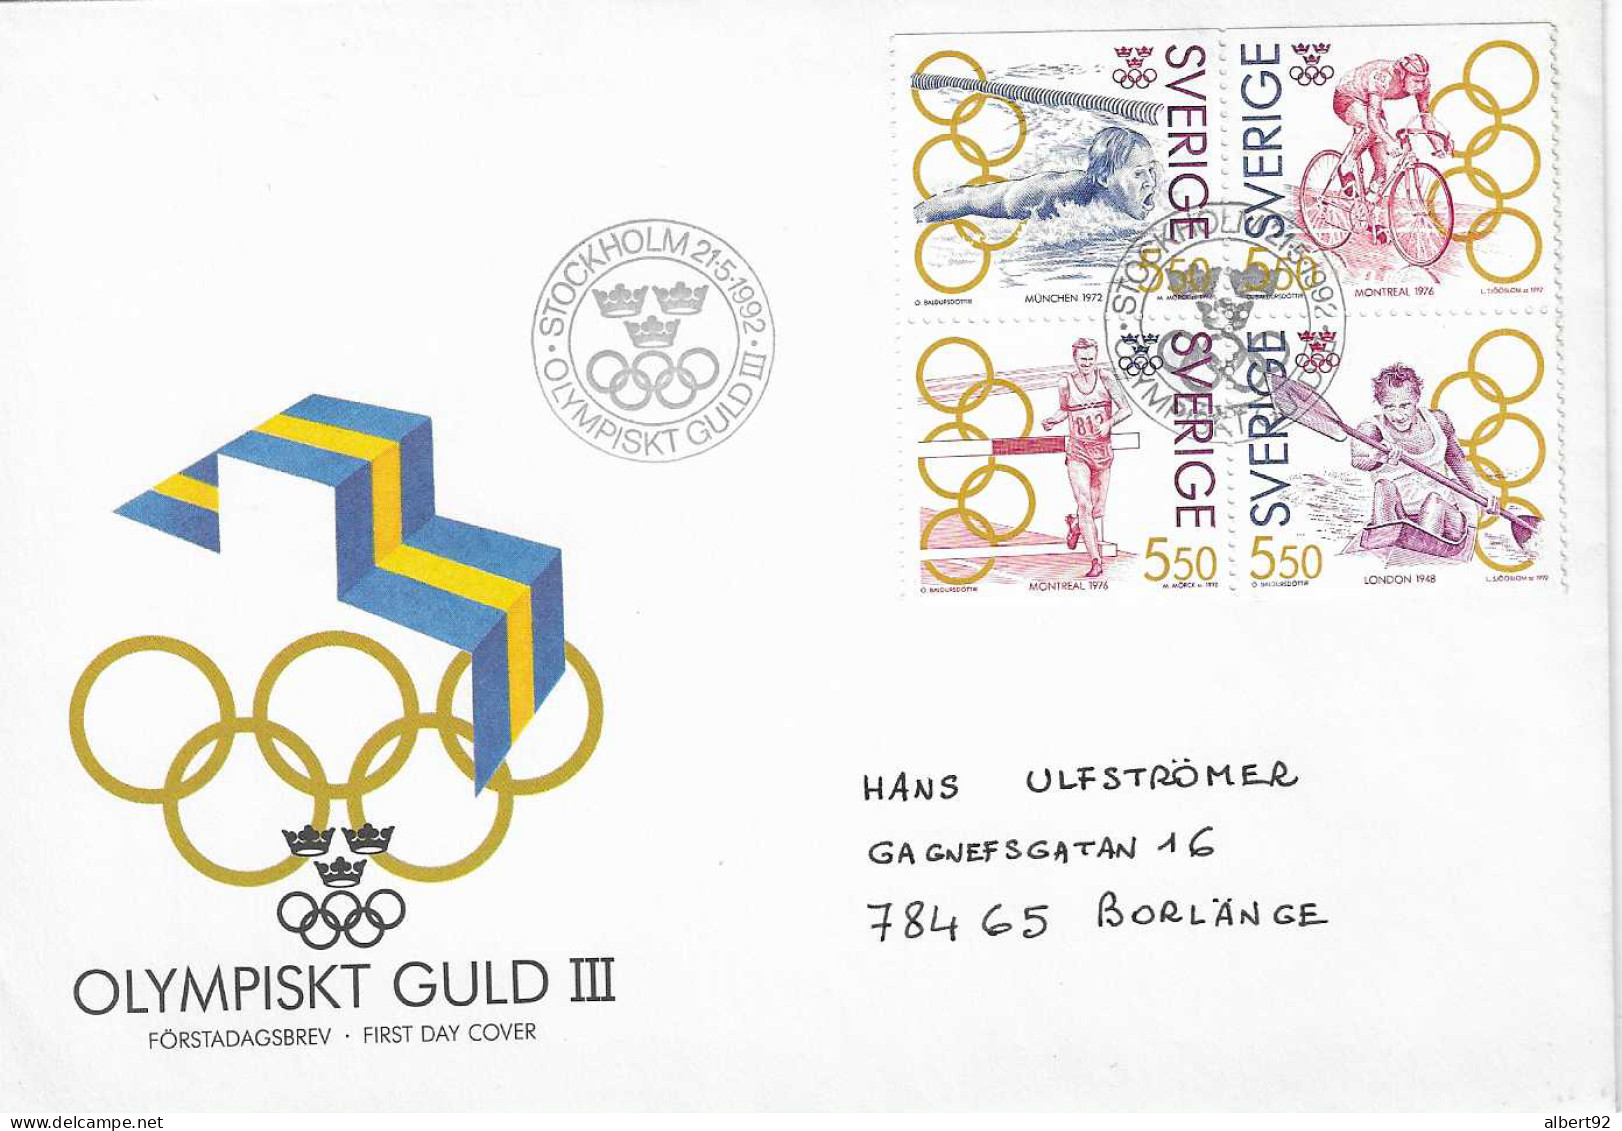 1992 Médaillés OR Suédois Aux Jeux Olympiques: Canoë (Londres 1948) Athlétisme, Cyclisme (Montréal 1976) Natation (1972) - Winter 1932: Lake Placid